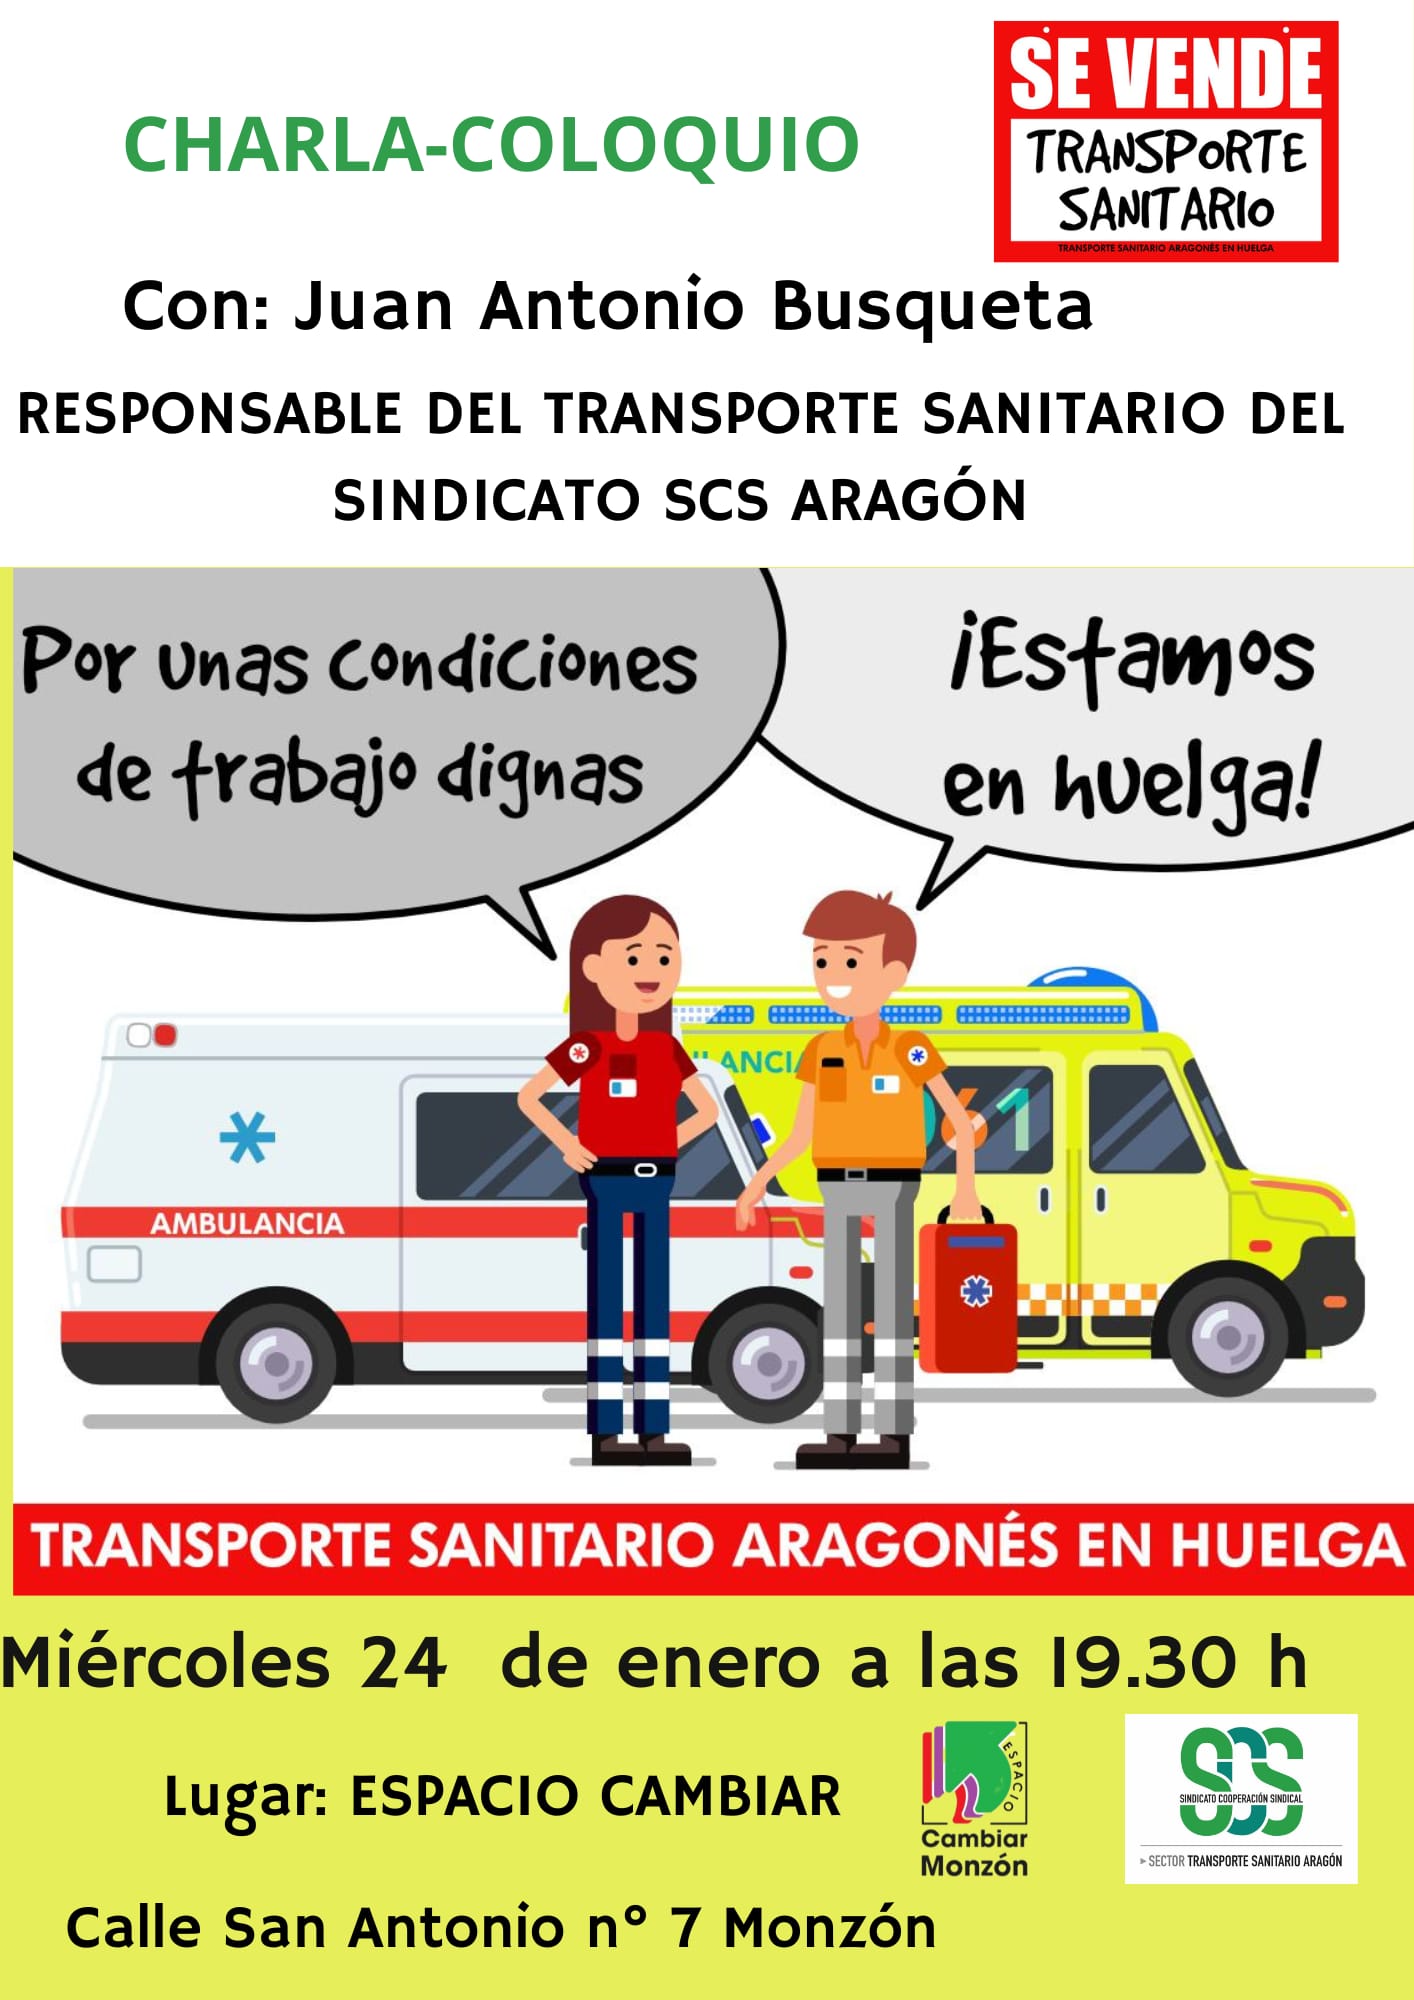 Charla-coloquio "Transporte sanitario urgente"